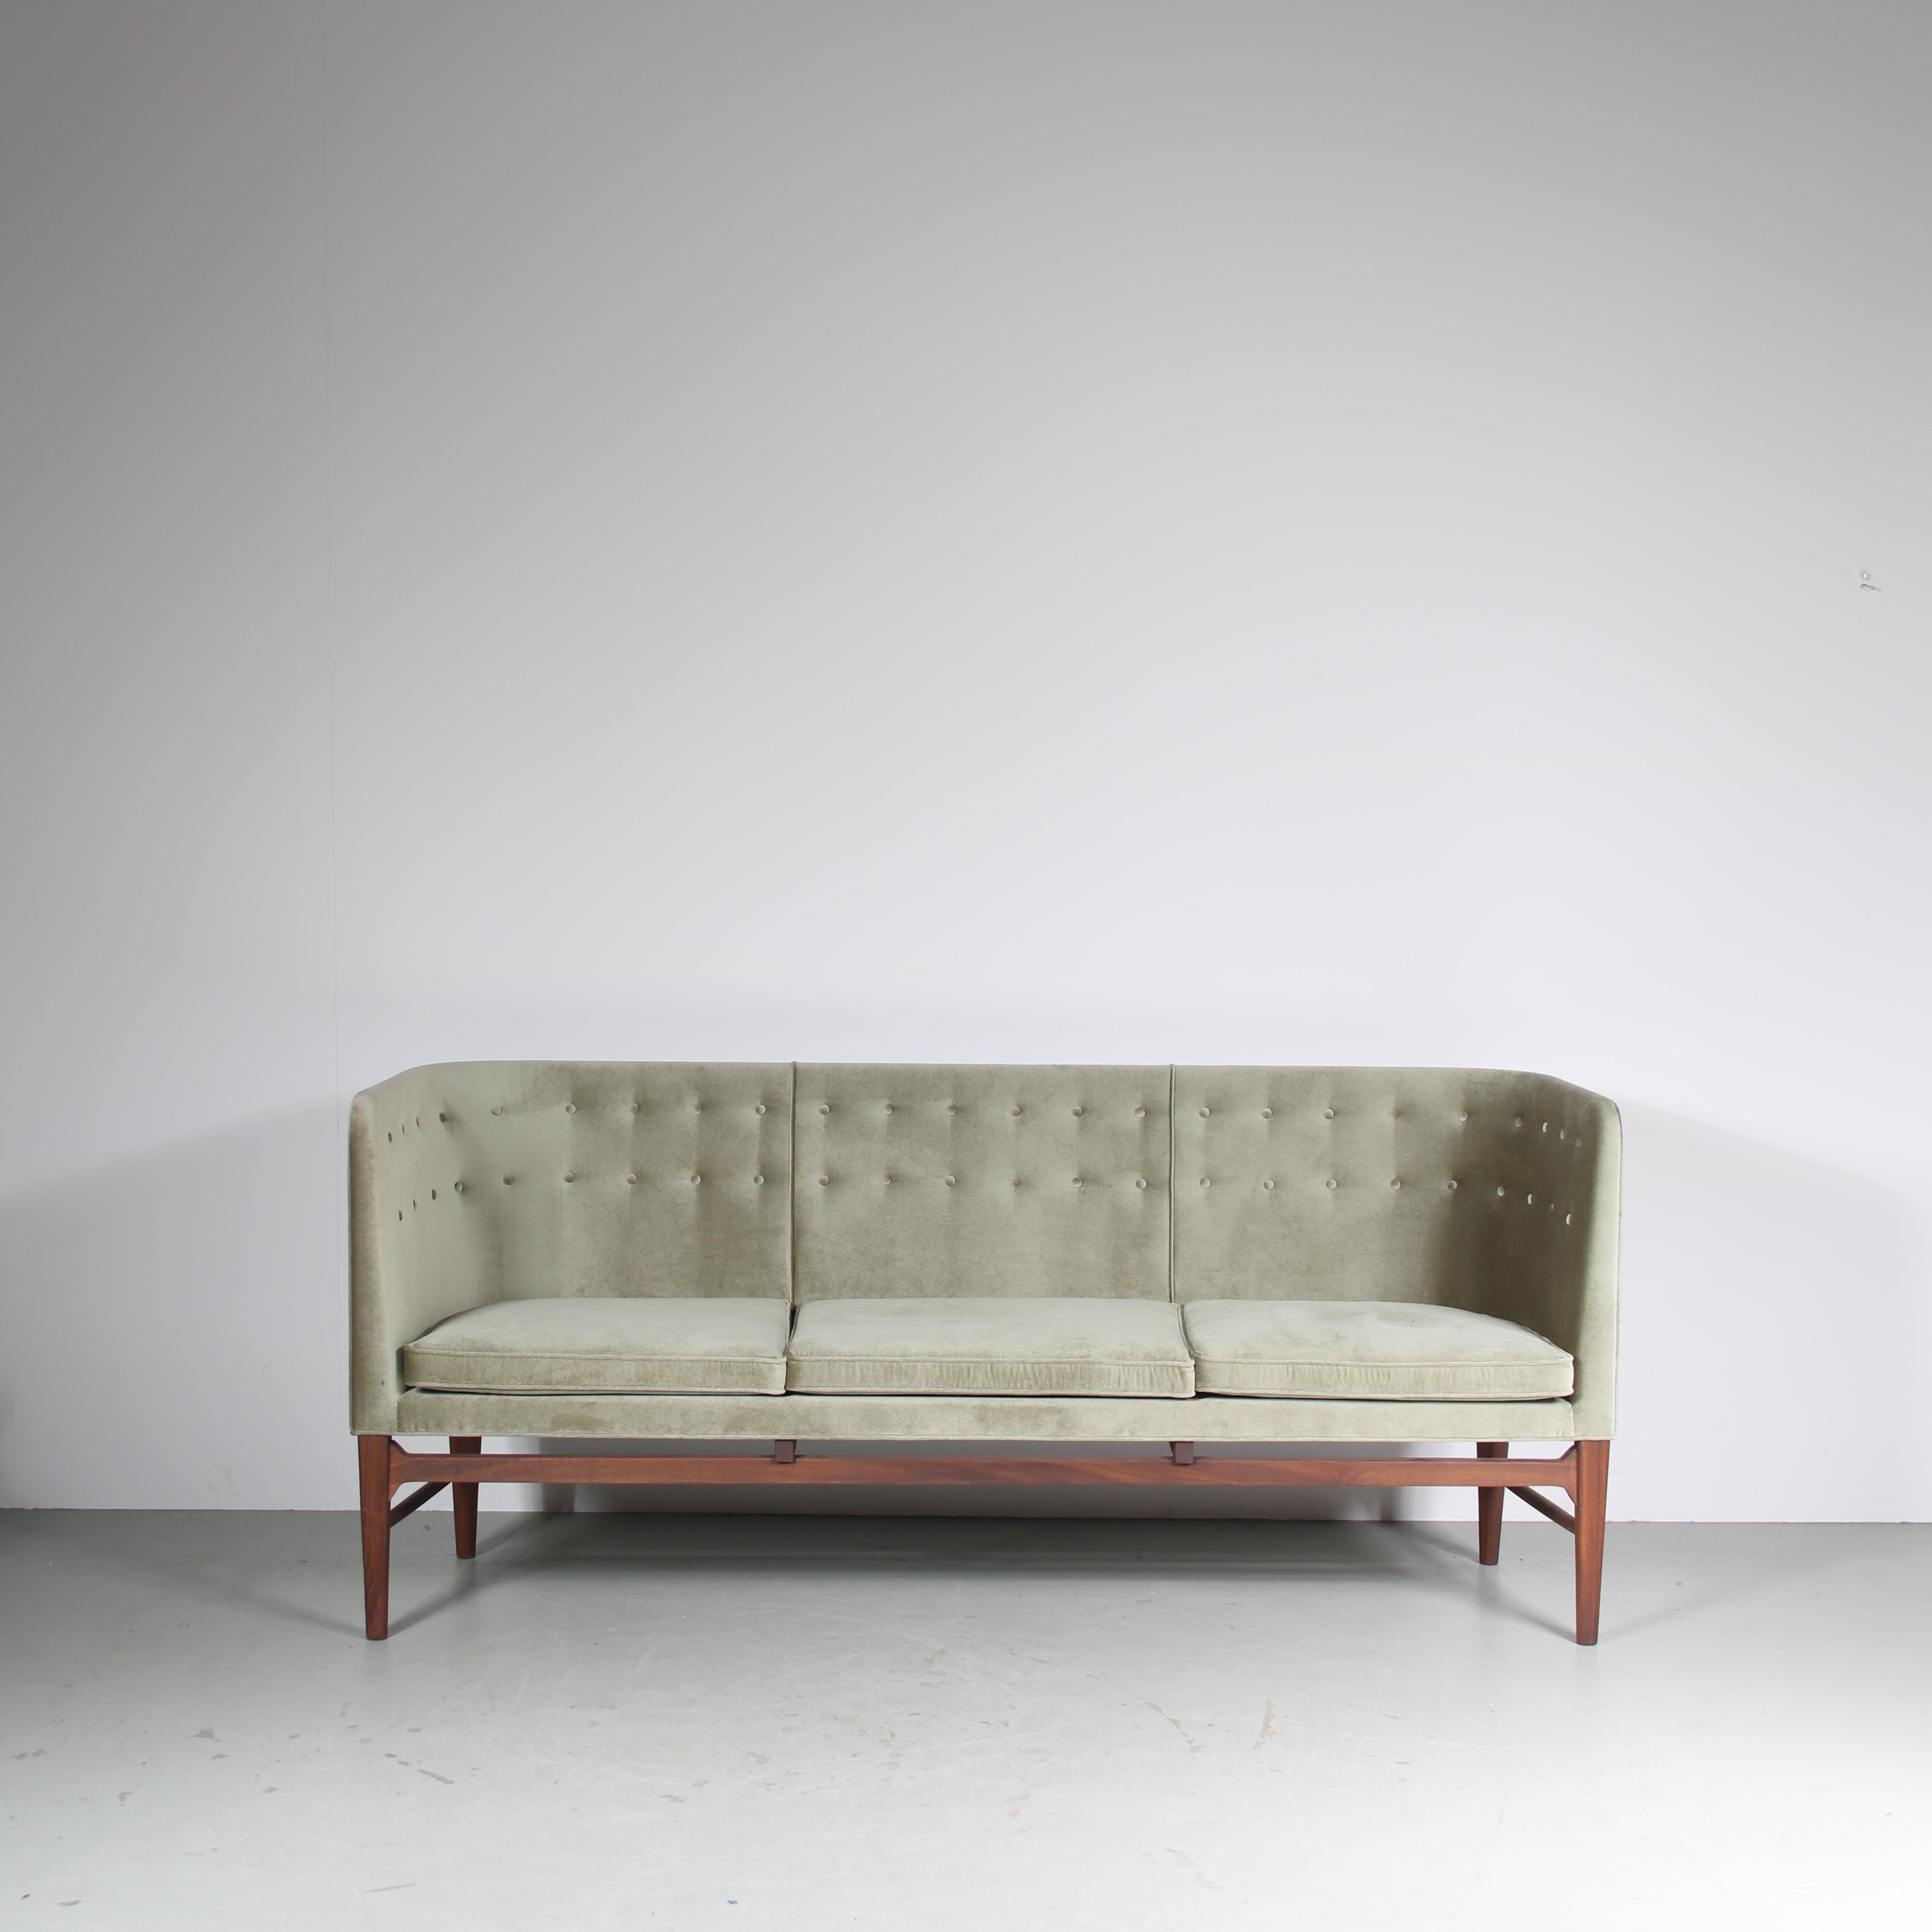 Ein wunderschönes Sofa, Modell Mayor AJ5, entworfen von Arne Jacobsen und Flemming Lassen im Jahr 1939 und hergestellt von &Tradition in Dänemark in den 2020er Jahren.

Hergestellt aus hochwertigem Eichenholz mit einem schönen grünen Stoffbezug, der